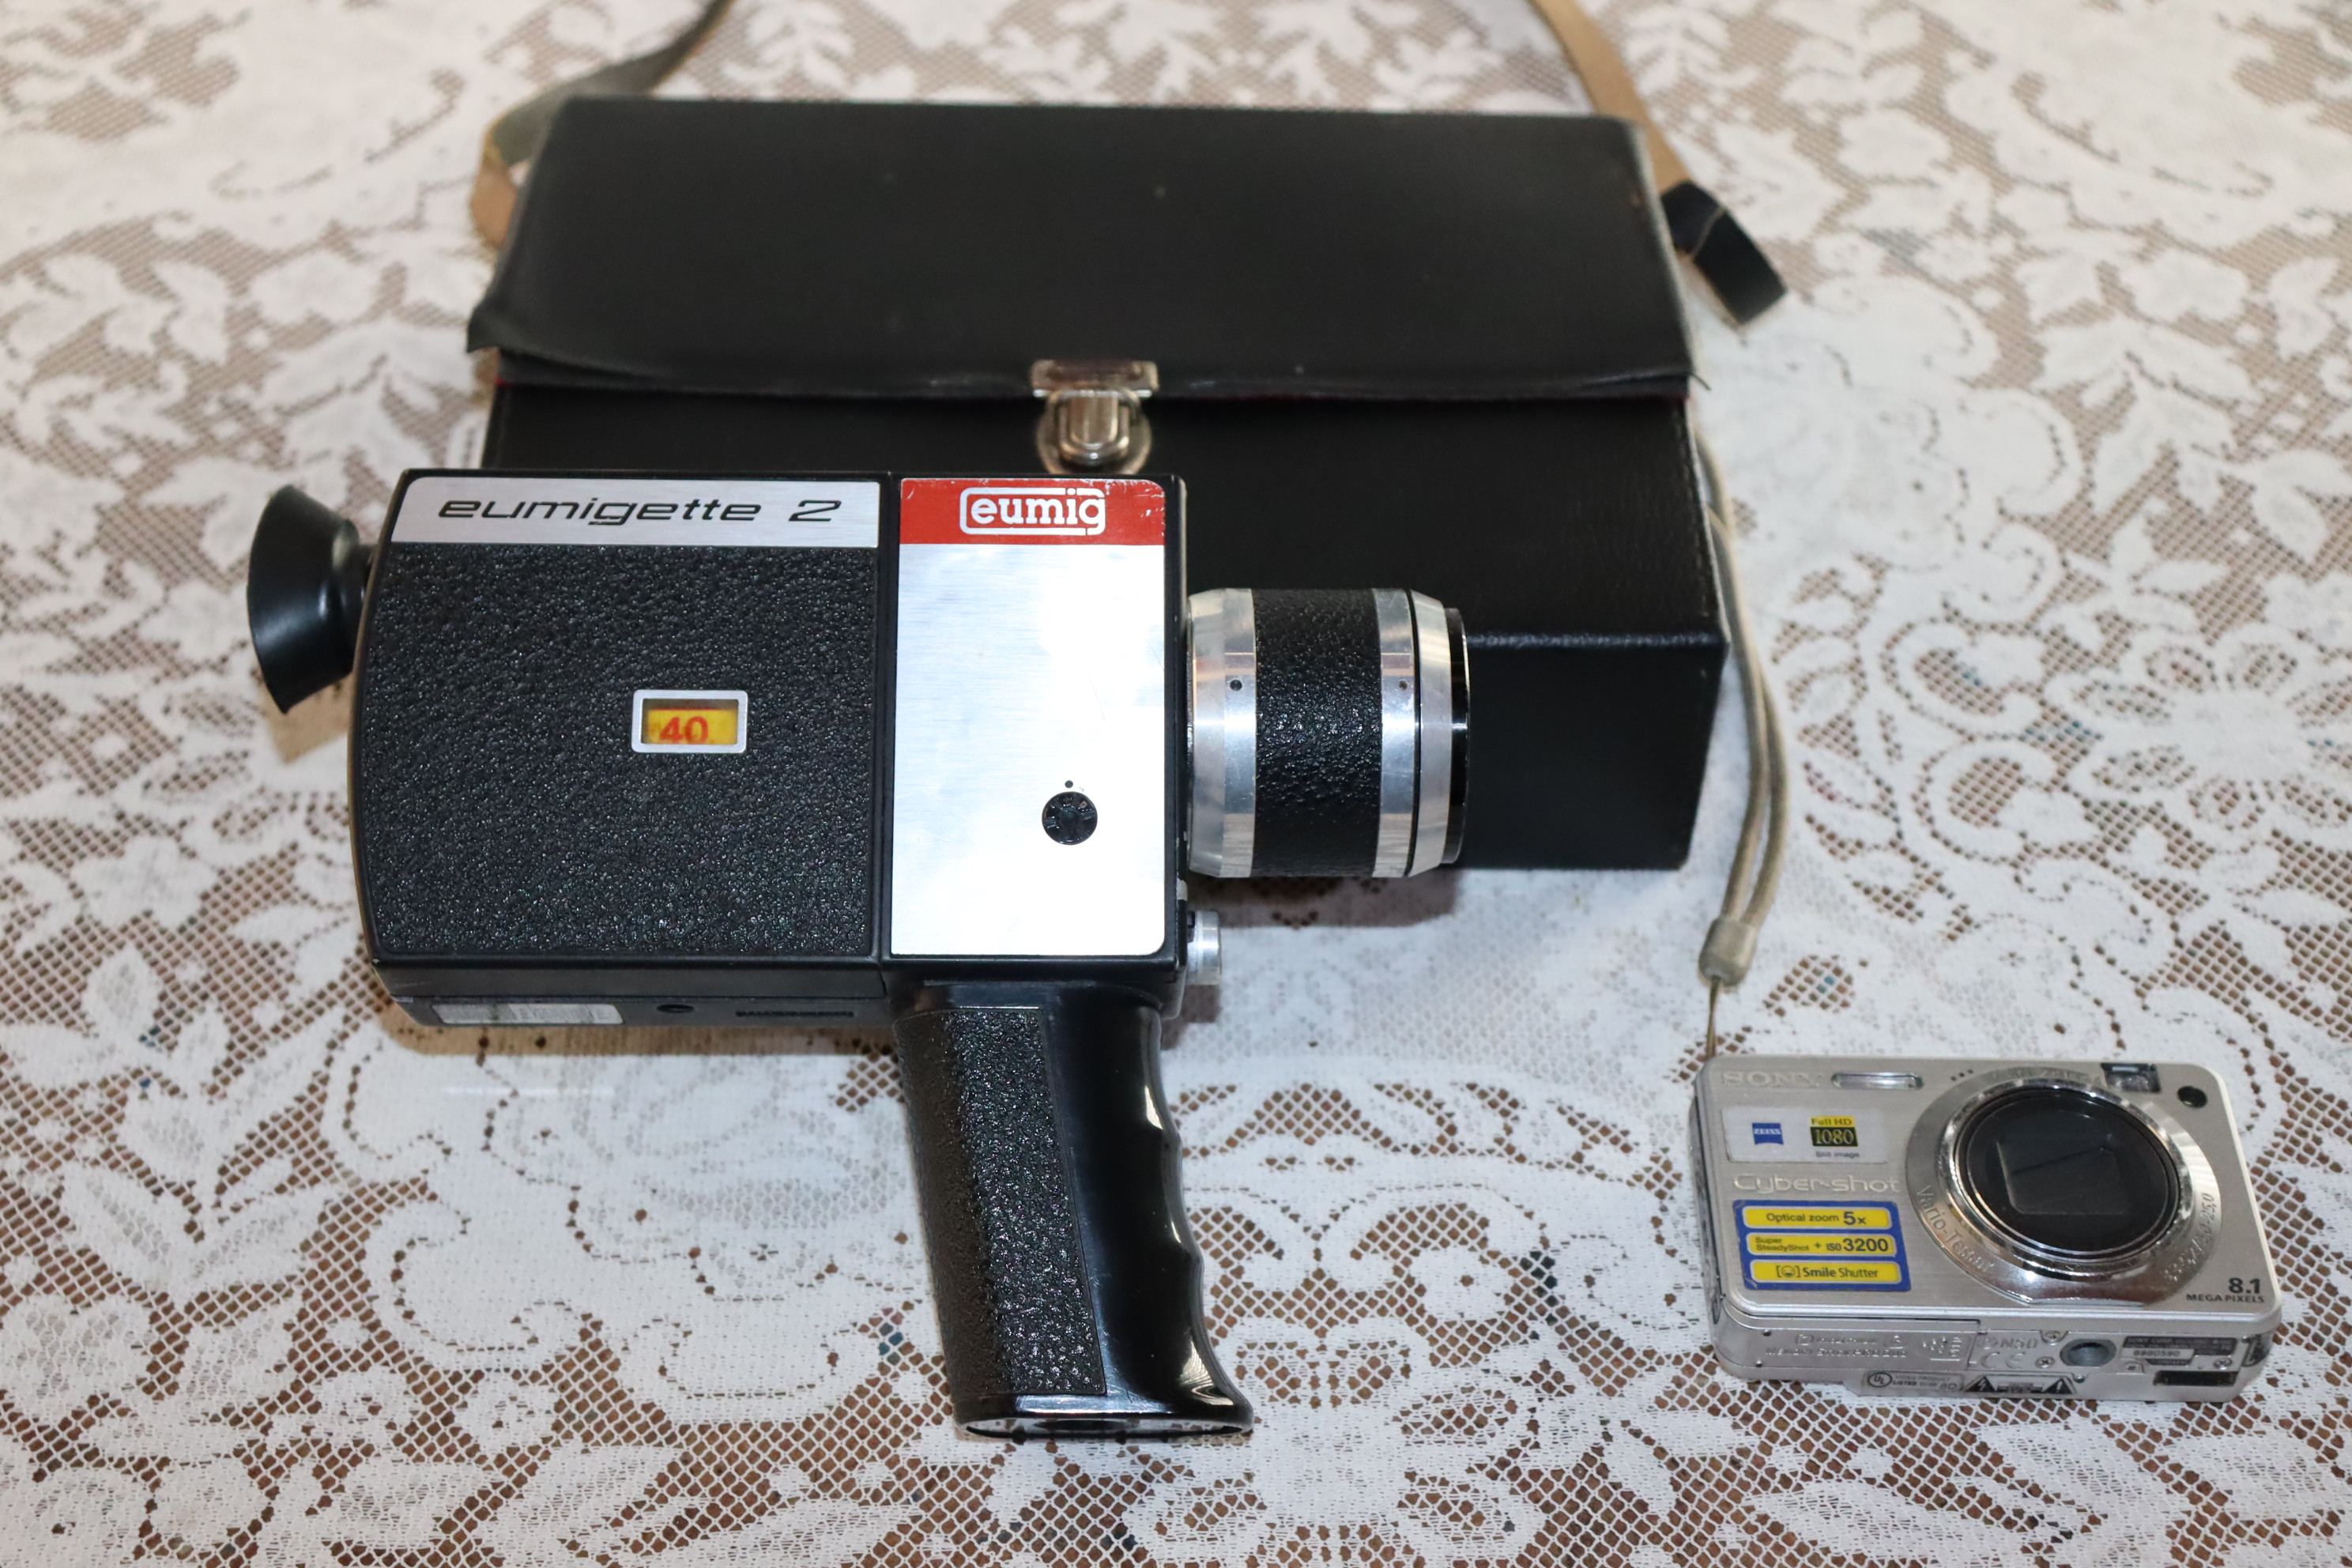 Filmadora super 8 Eumig e maquina fotográfica digital amadora Sony